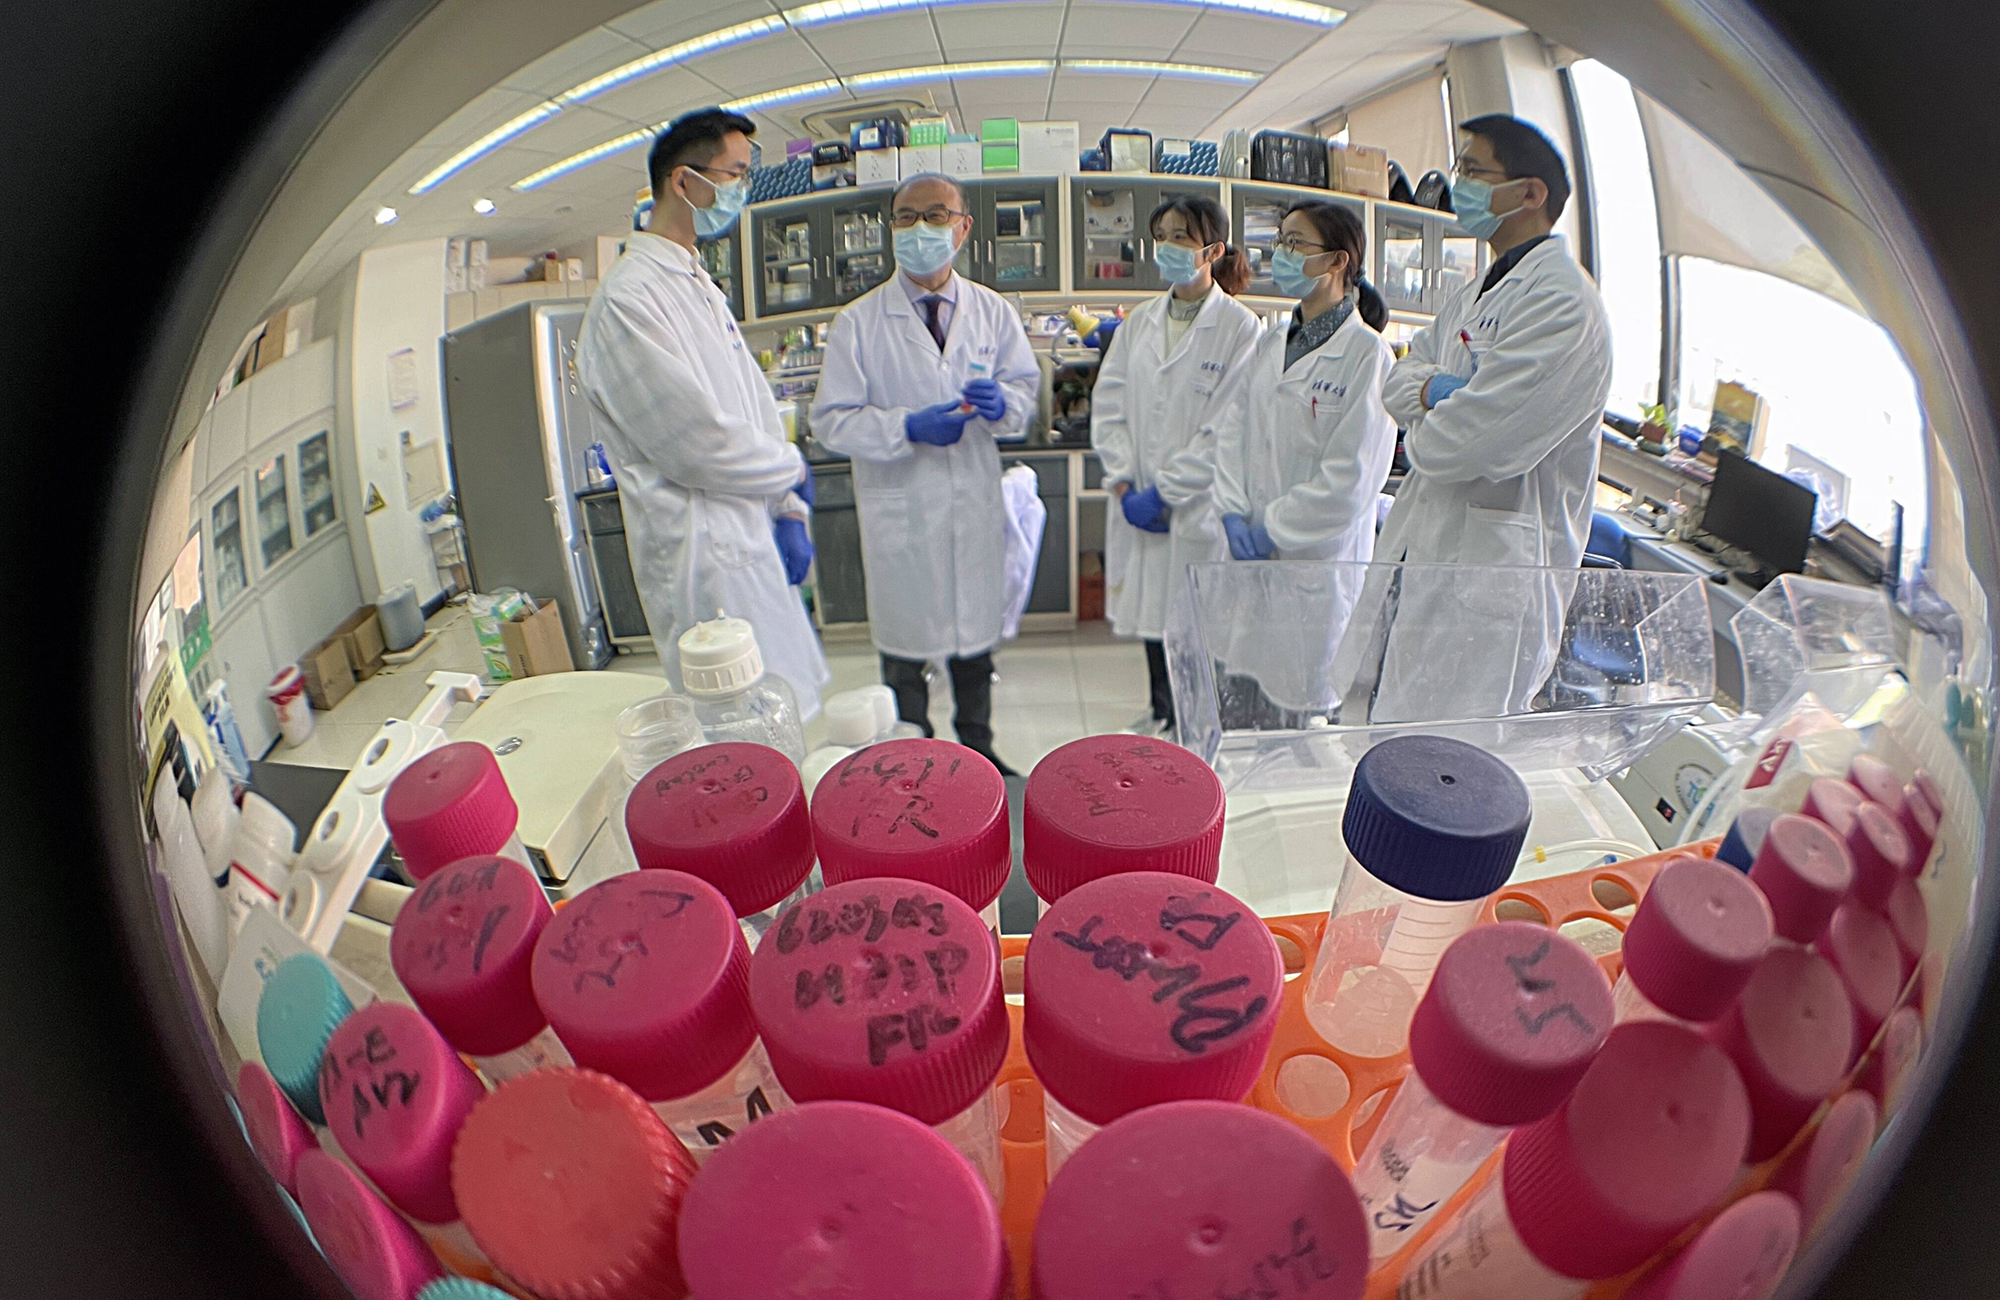 Zhang Linqi (2. von links), Professor an der Pekinger Tsinghua University School of Medicine, im Gespräch mit Studenten. Zhang widmet sich seit 30 Jahren der Erforschung der HIV-1-Pathogenese und der Entwicklung von Impfstoffen. Jetzt hat er innerhalb eines Jahres einen Impfstoff gegen Covid-19 entwickelt. Foto: MAGO / ZUMA Wire (Simon Song)